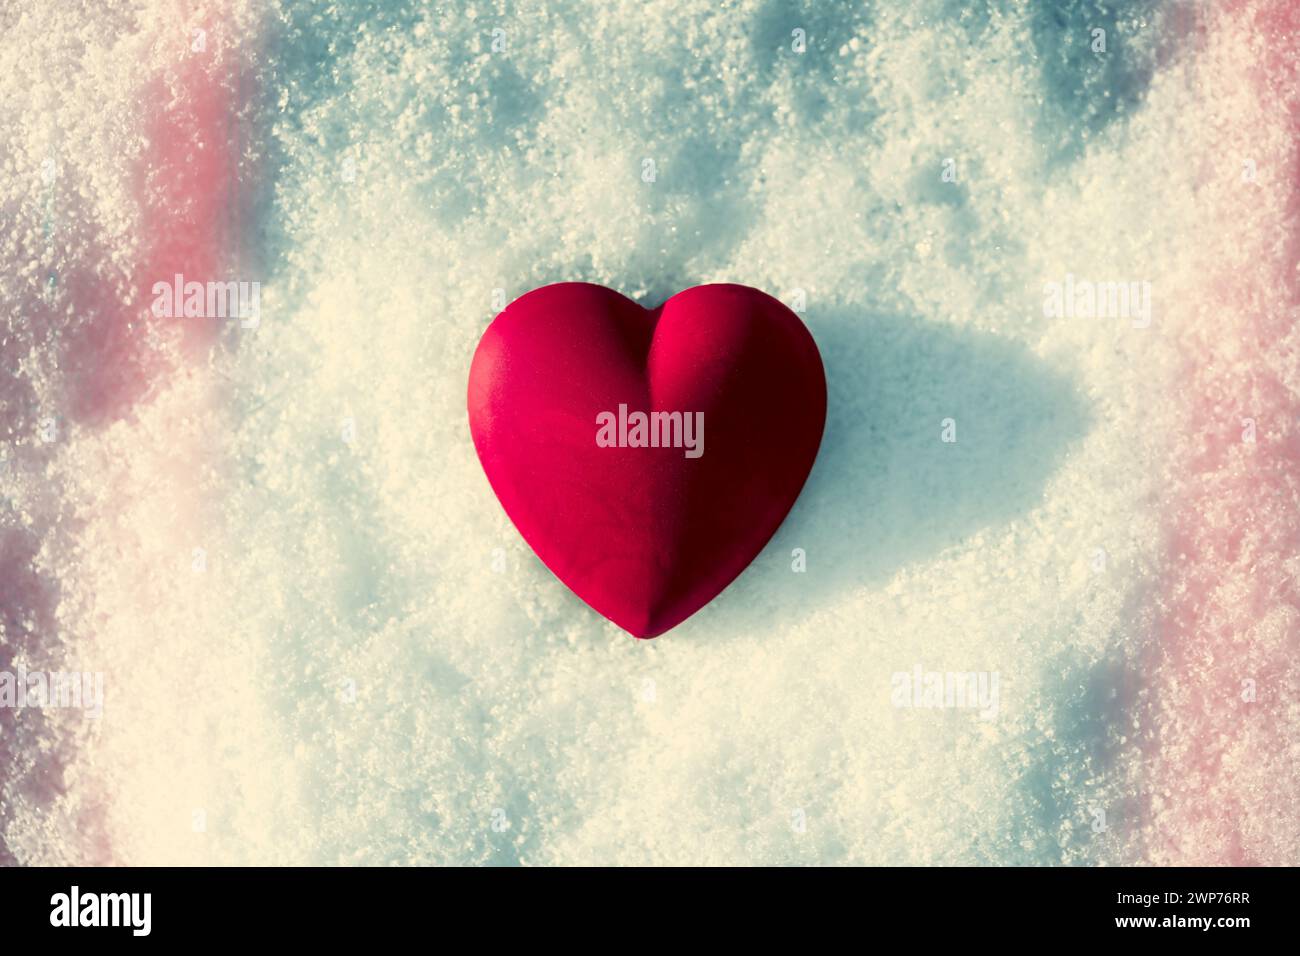 Herz auf Schnee, eiskaltes Herz, enttäuschte Liebe, Trennung Foto Stock